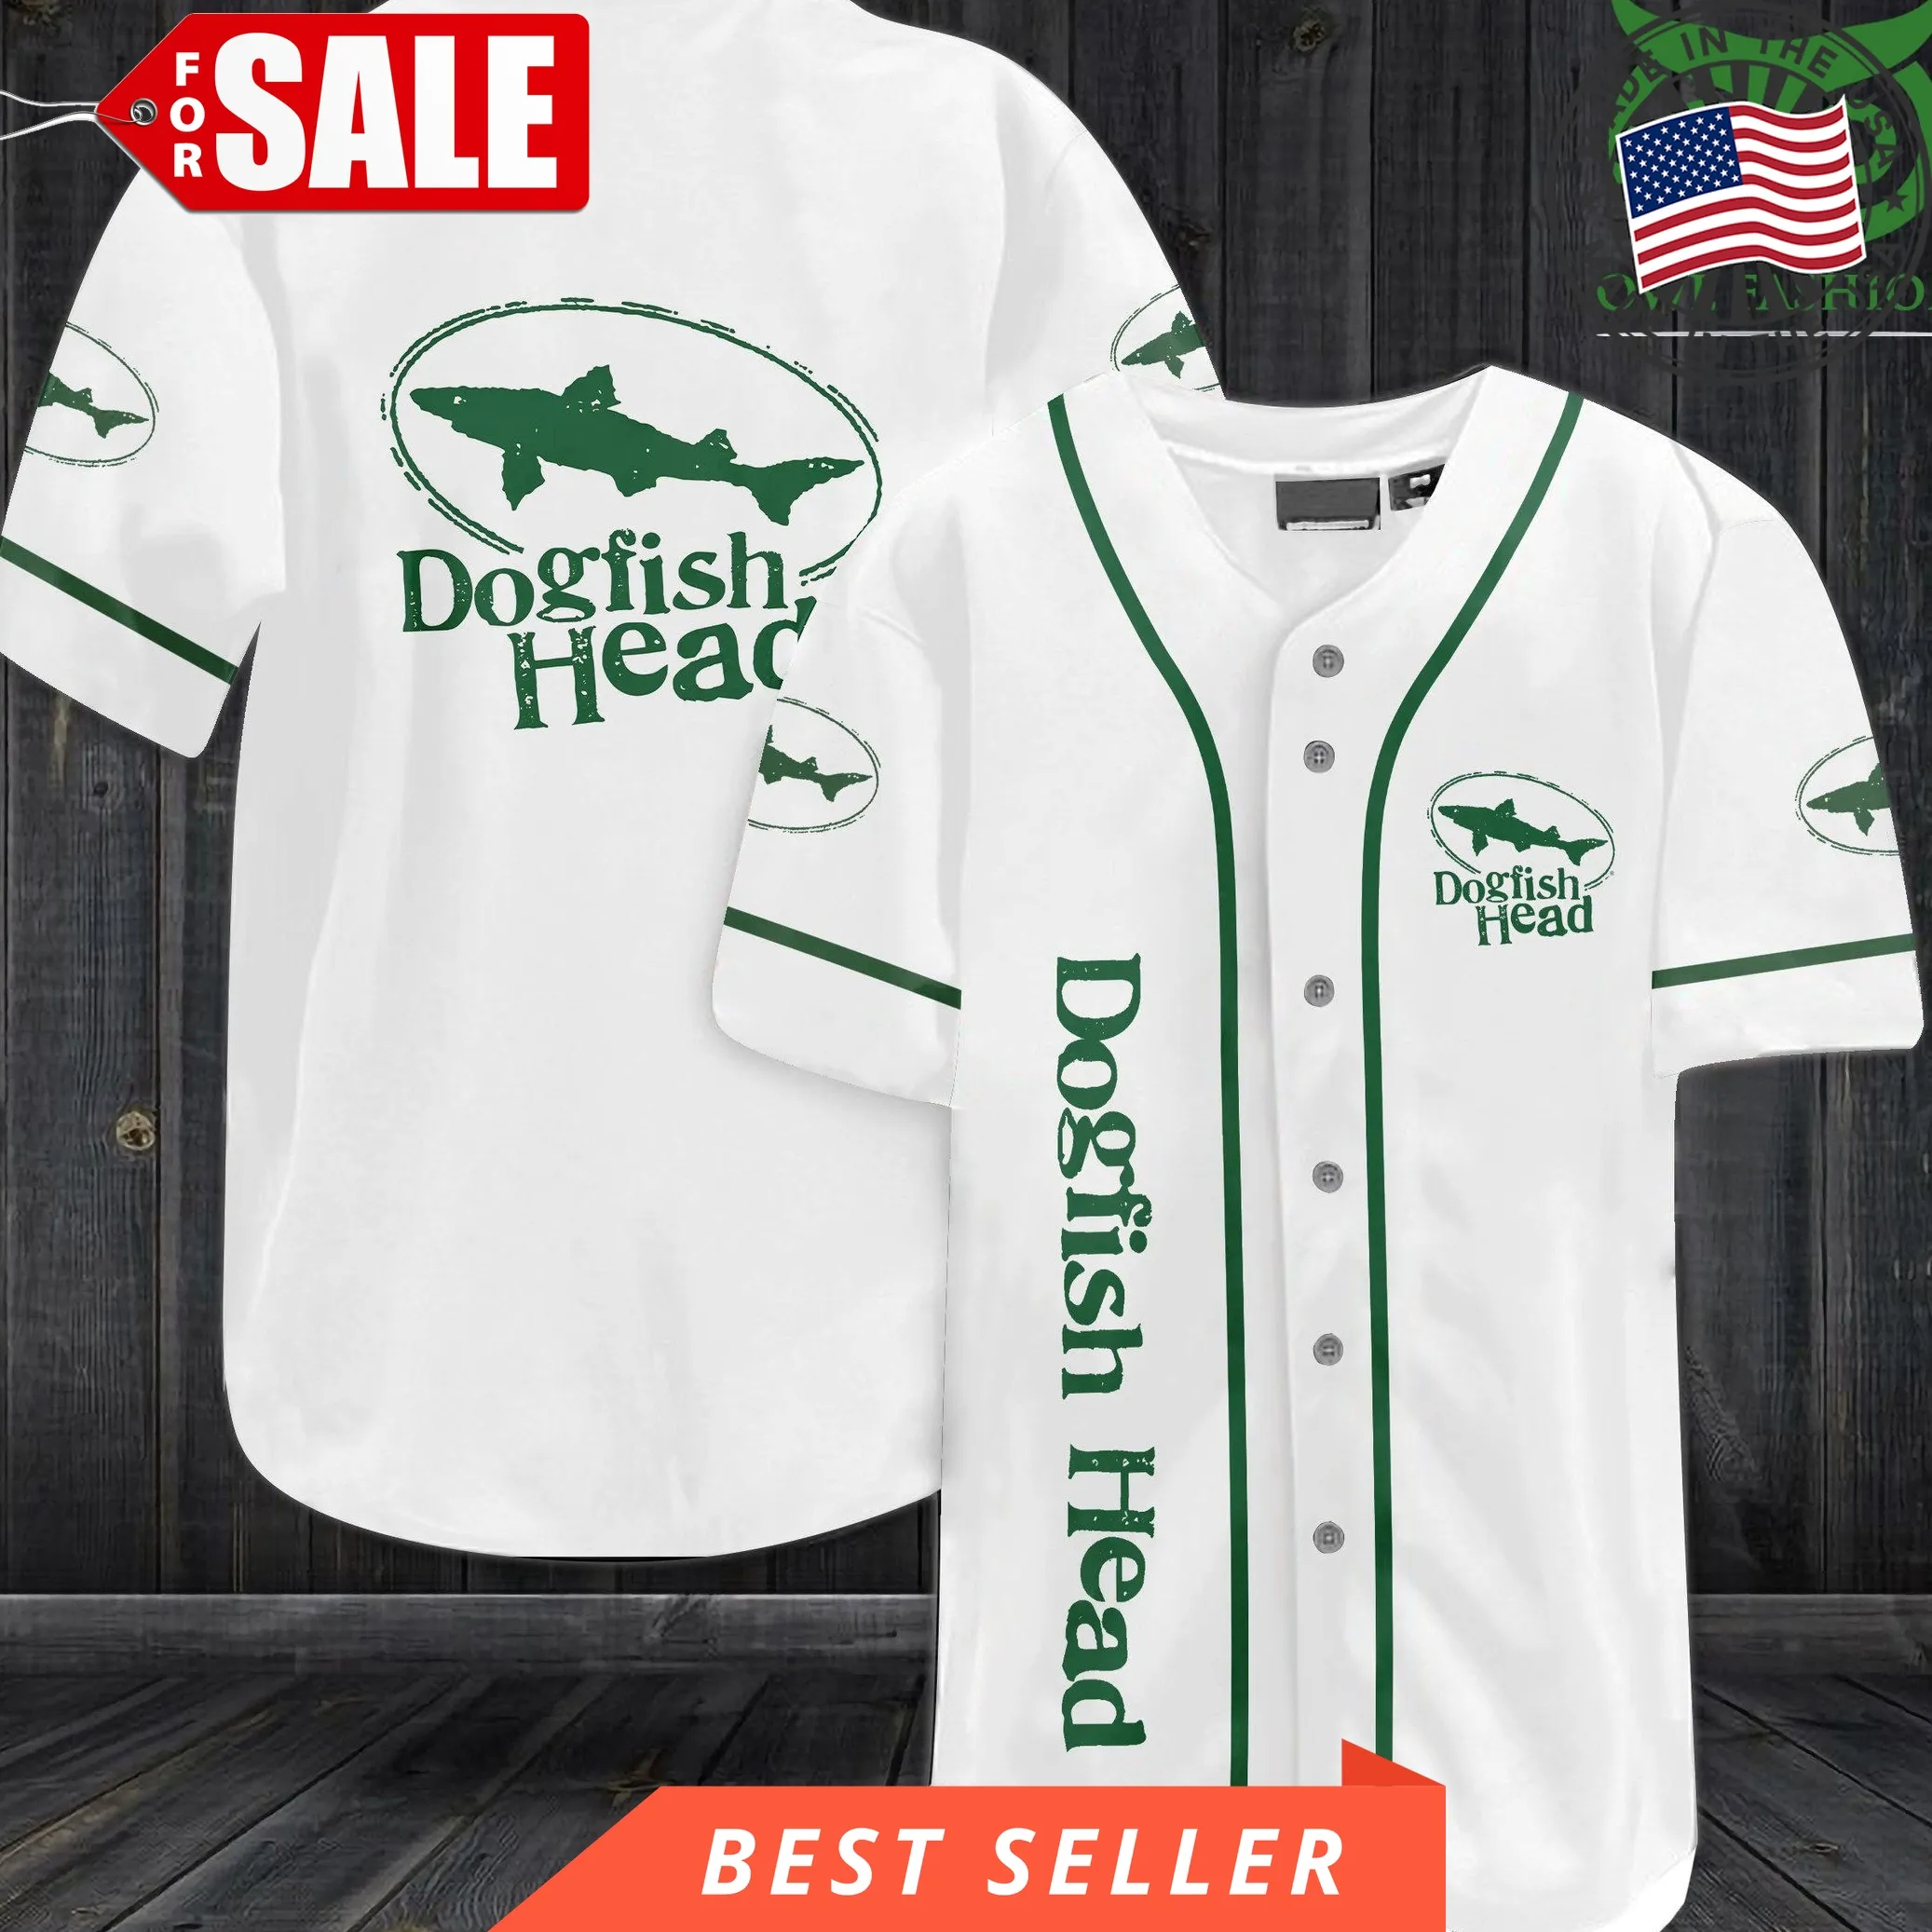 Dogfish Head Baseball Jersey Shirt